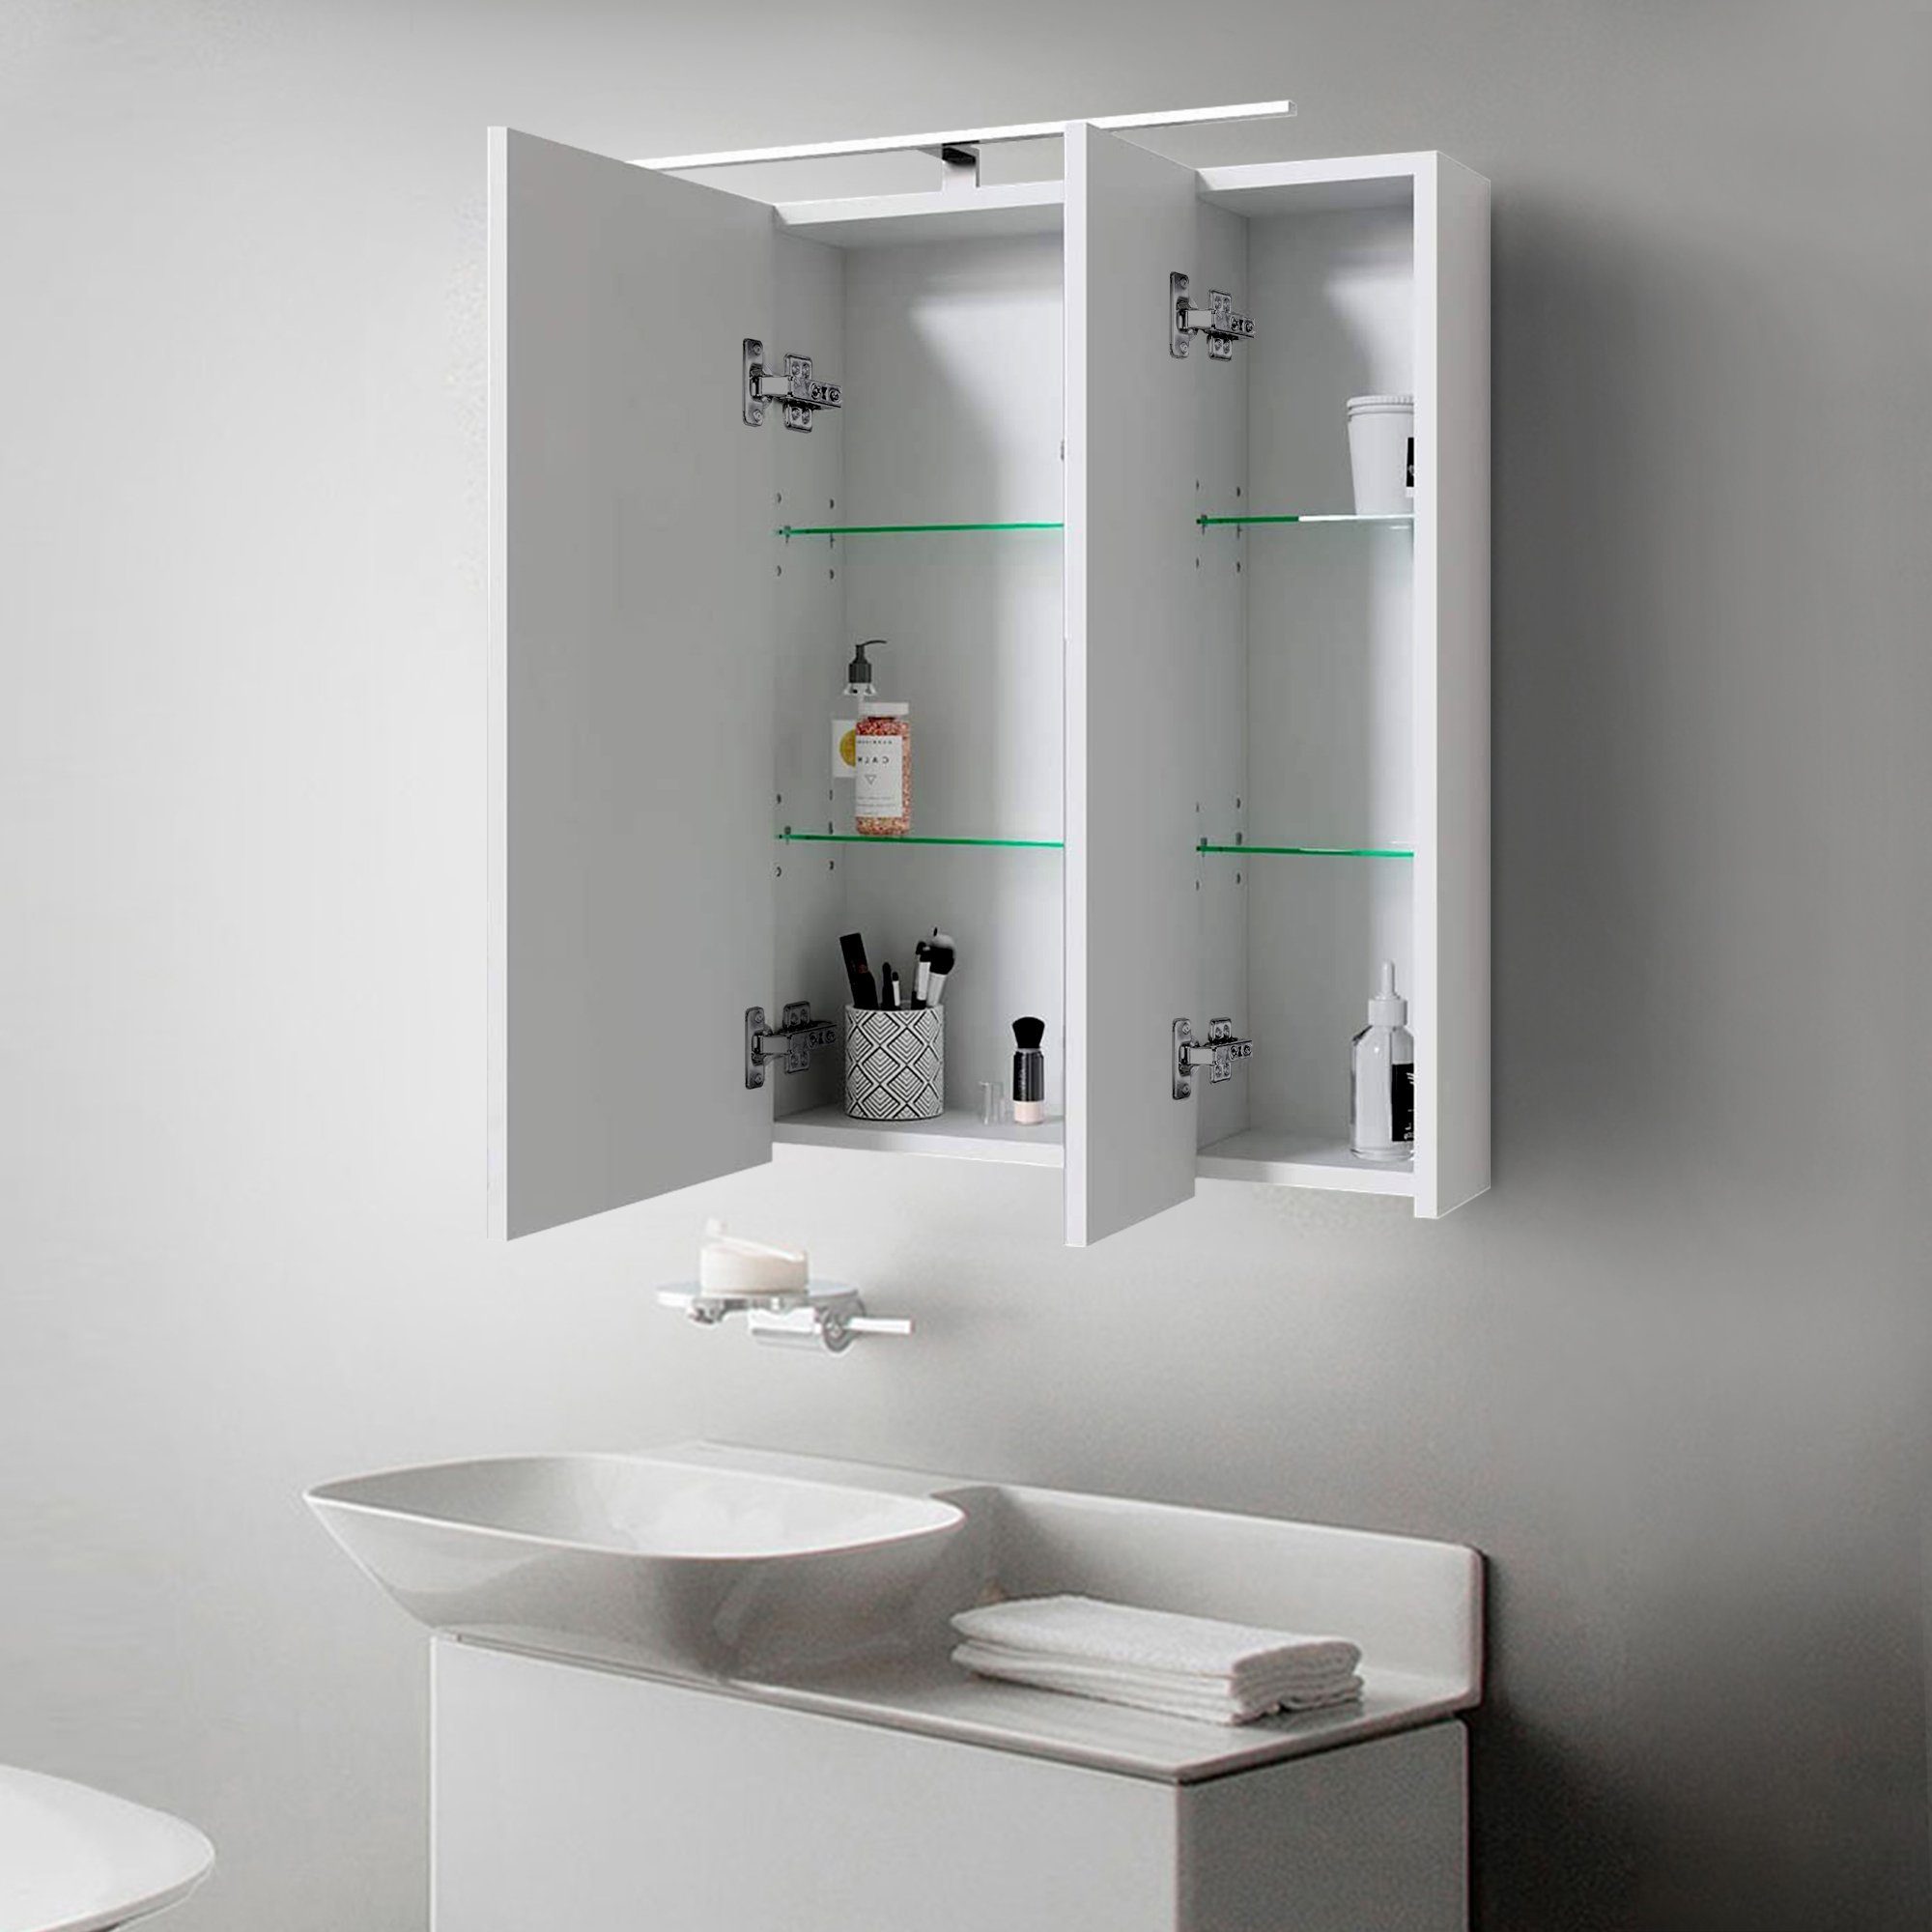 724x72x15cm LED Badschrank Lichtschalter Weiß Badspiegel Beleuchtung ML-DESIGN Wandspiegel 3-Türig Steckdose Badezimmerspiegelschrank Badezimmerschrank